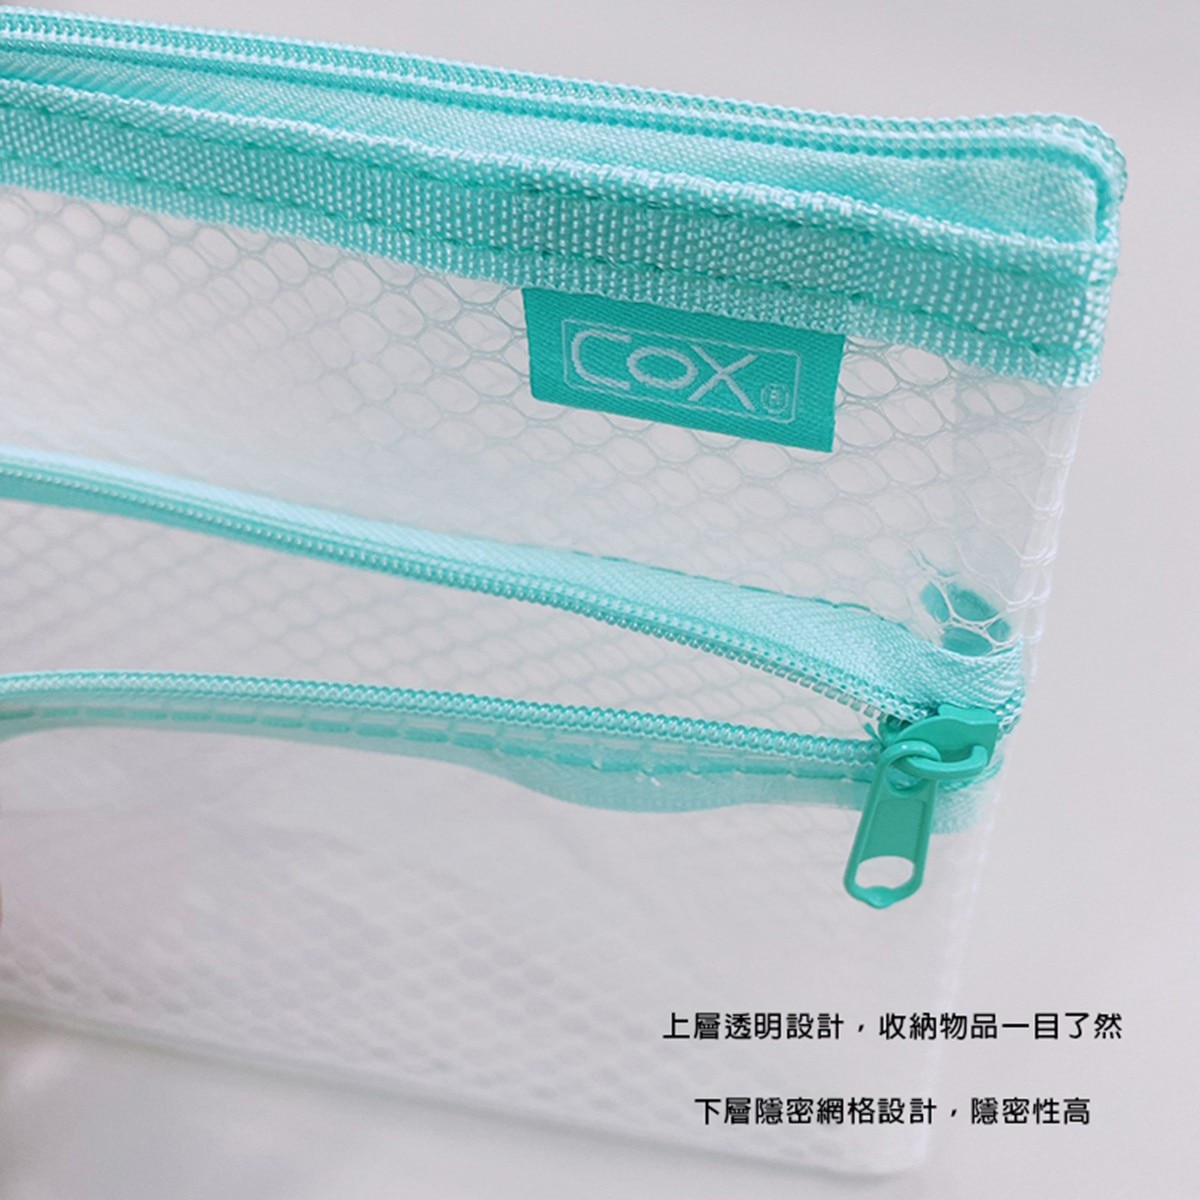 COX A5環保雙層【網格+透明】收納拉鍊袋，EVA環保材質，安全無毒，貼心收納、多樣收納一袋搞定。